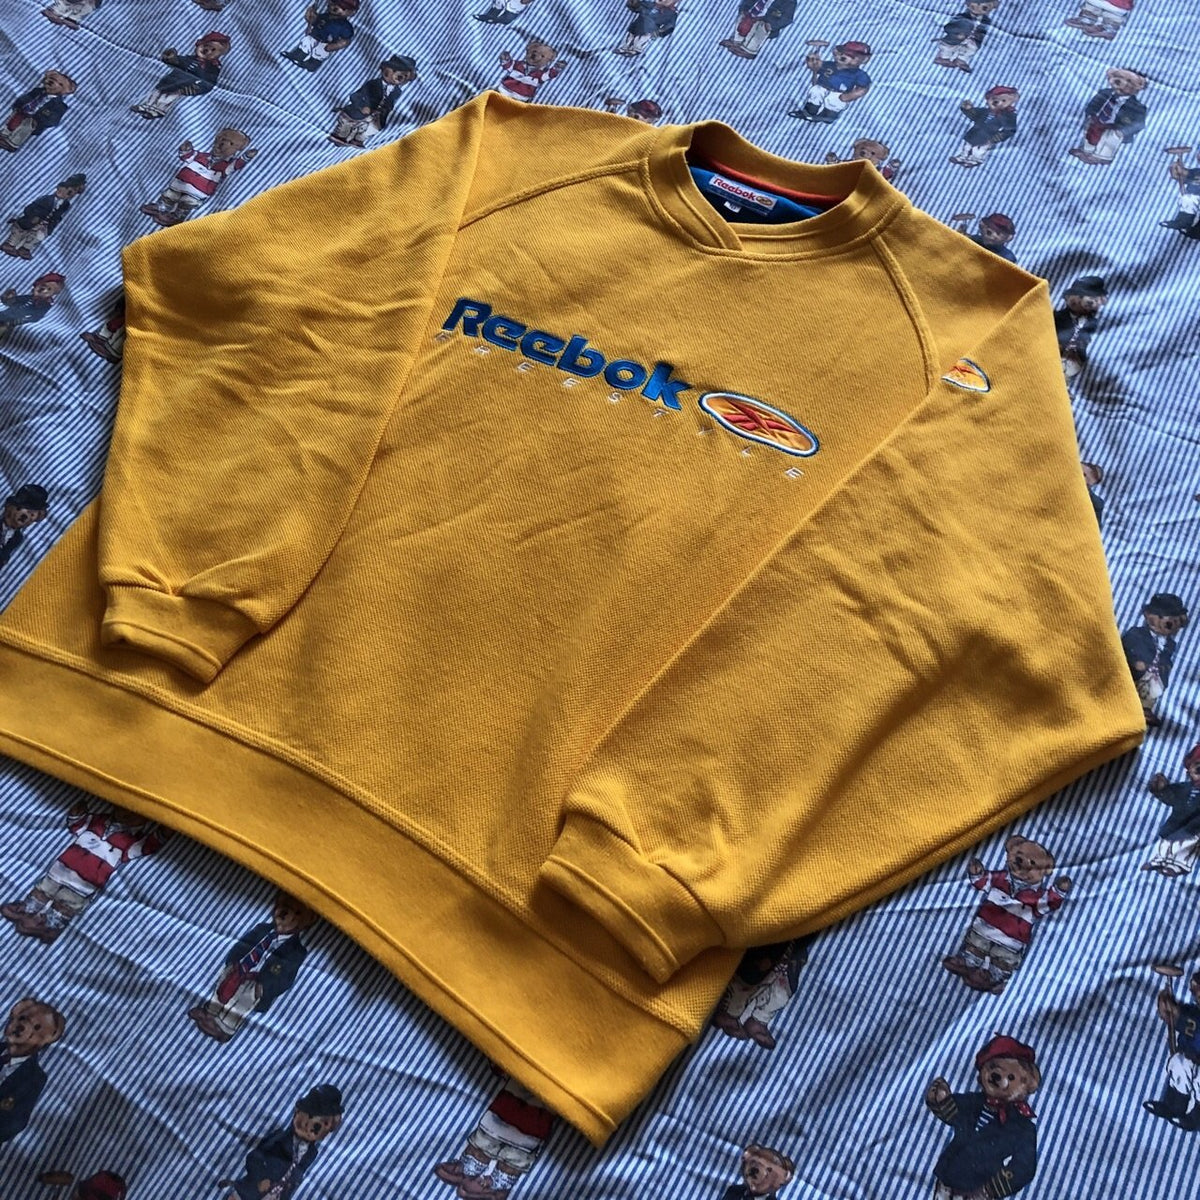 yellow reebok sweatshirt